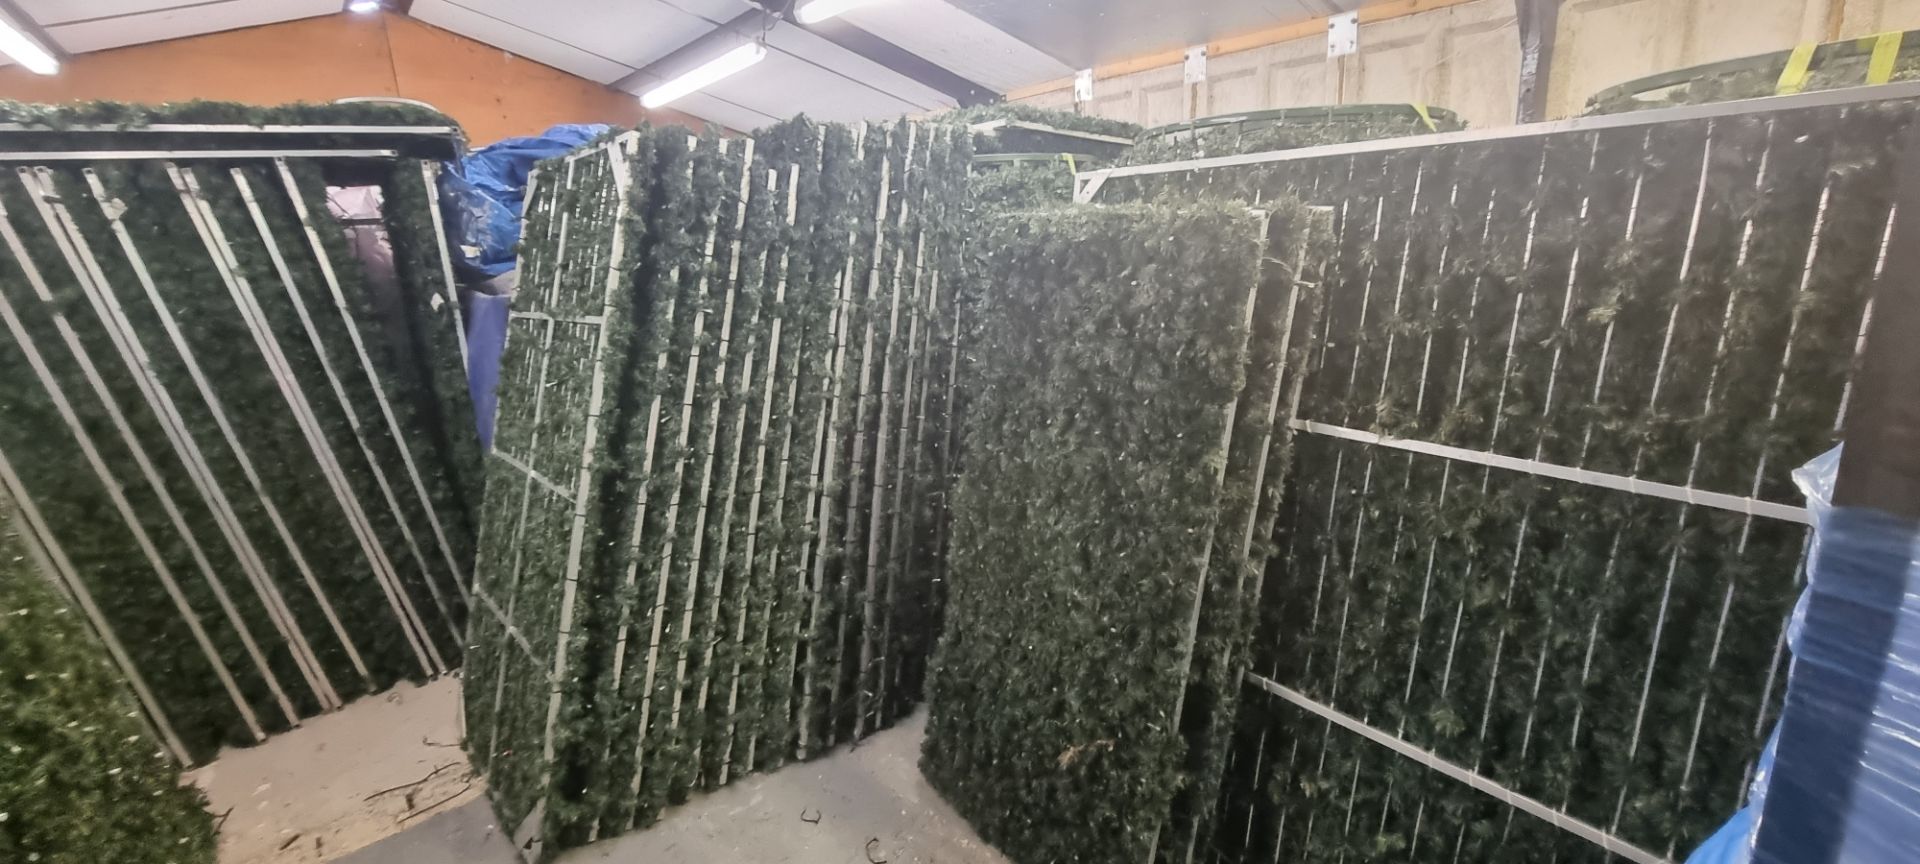 3 x Seasonal Aluminium Panels with Green Garland